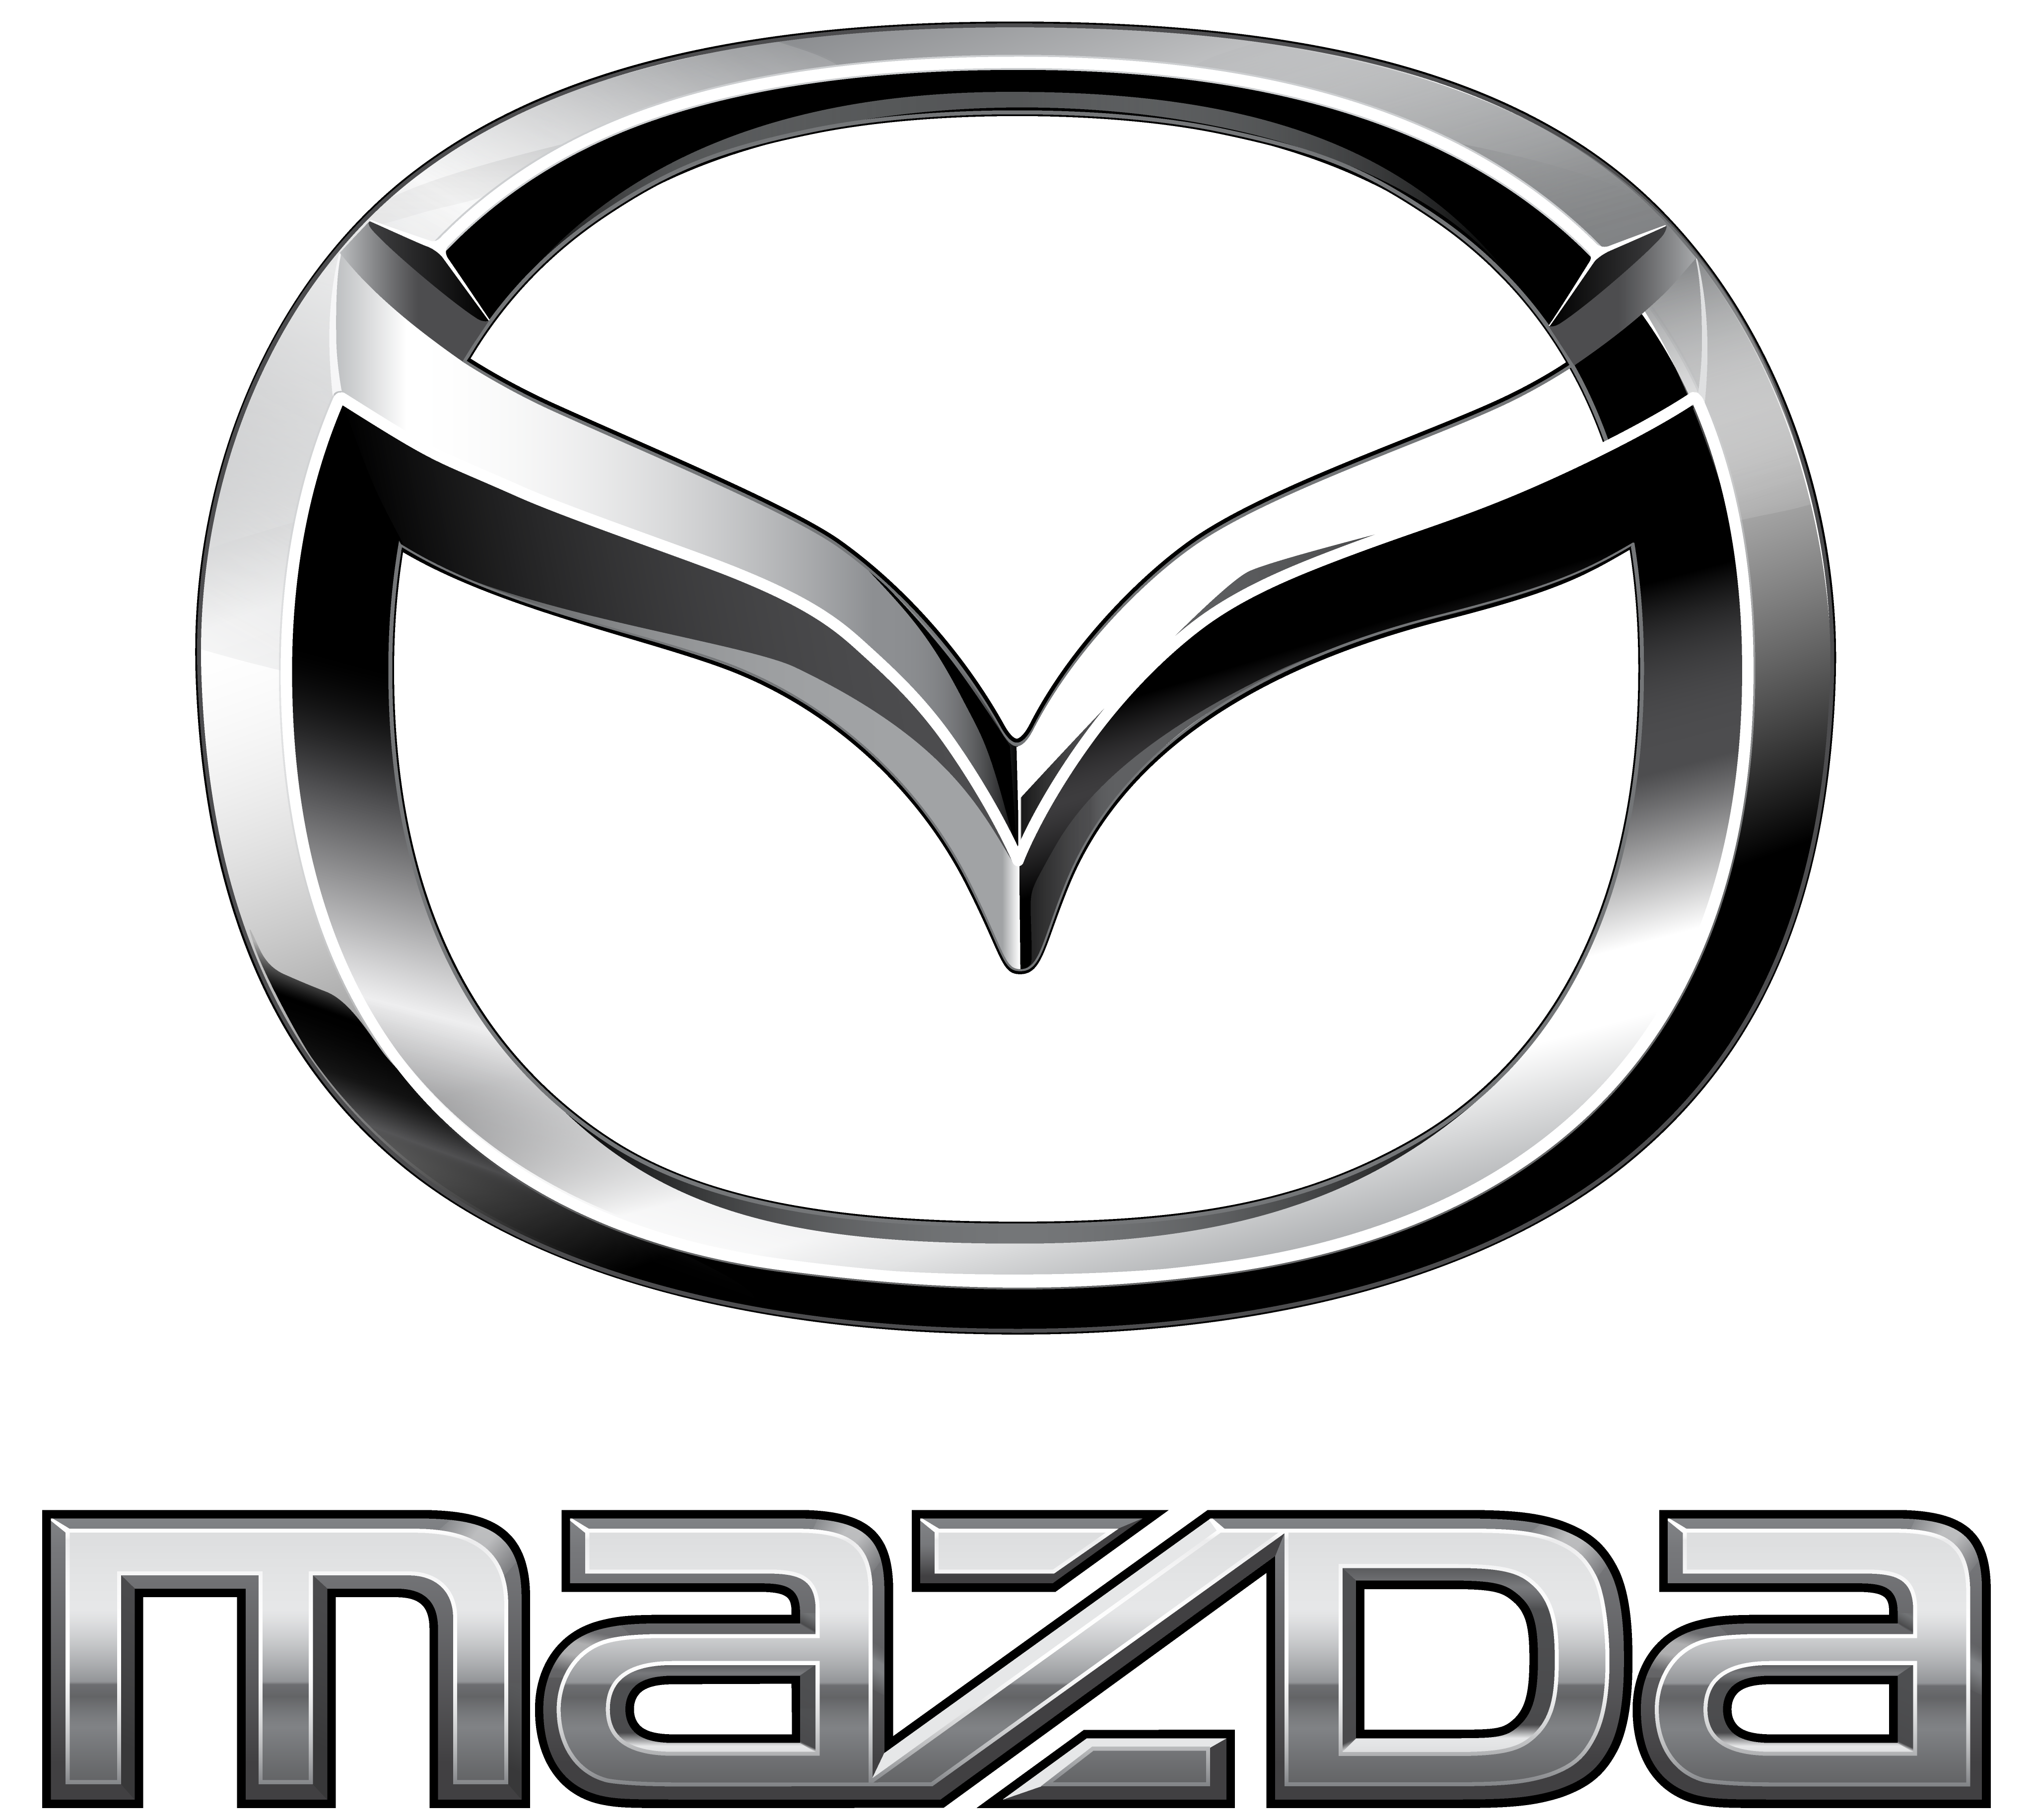 Τι σχέση έχει ο Ναός Ryoanji με τη Mazda